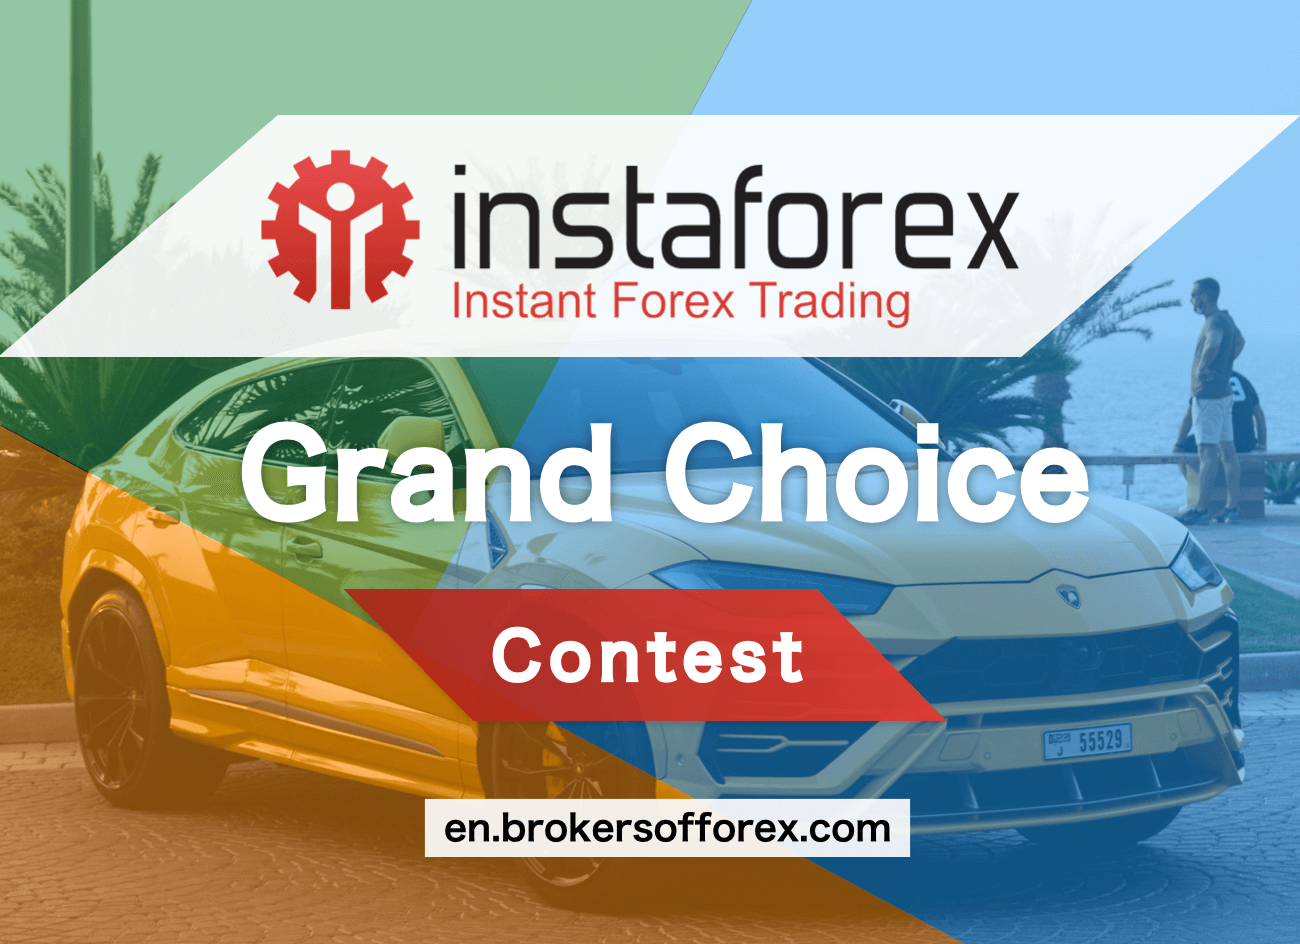 InstaForex Grand Choice Contest